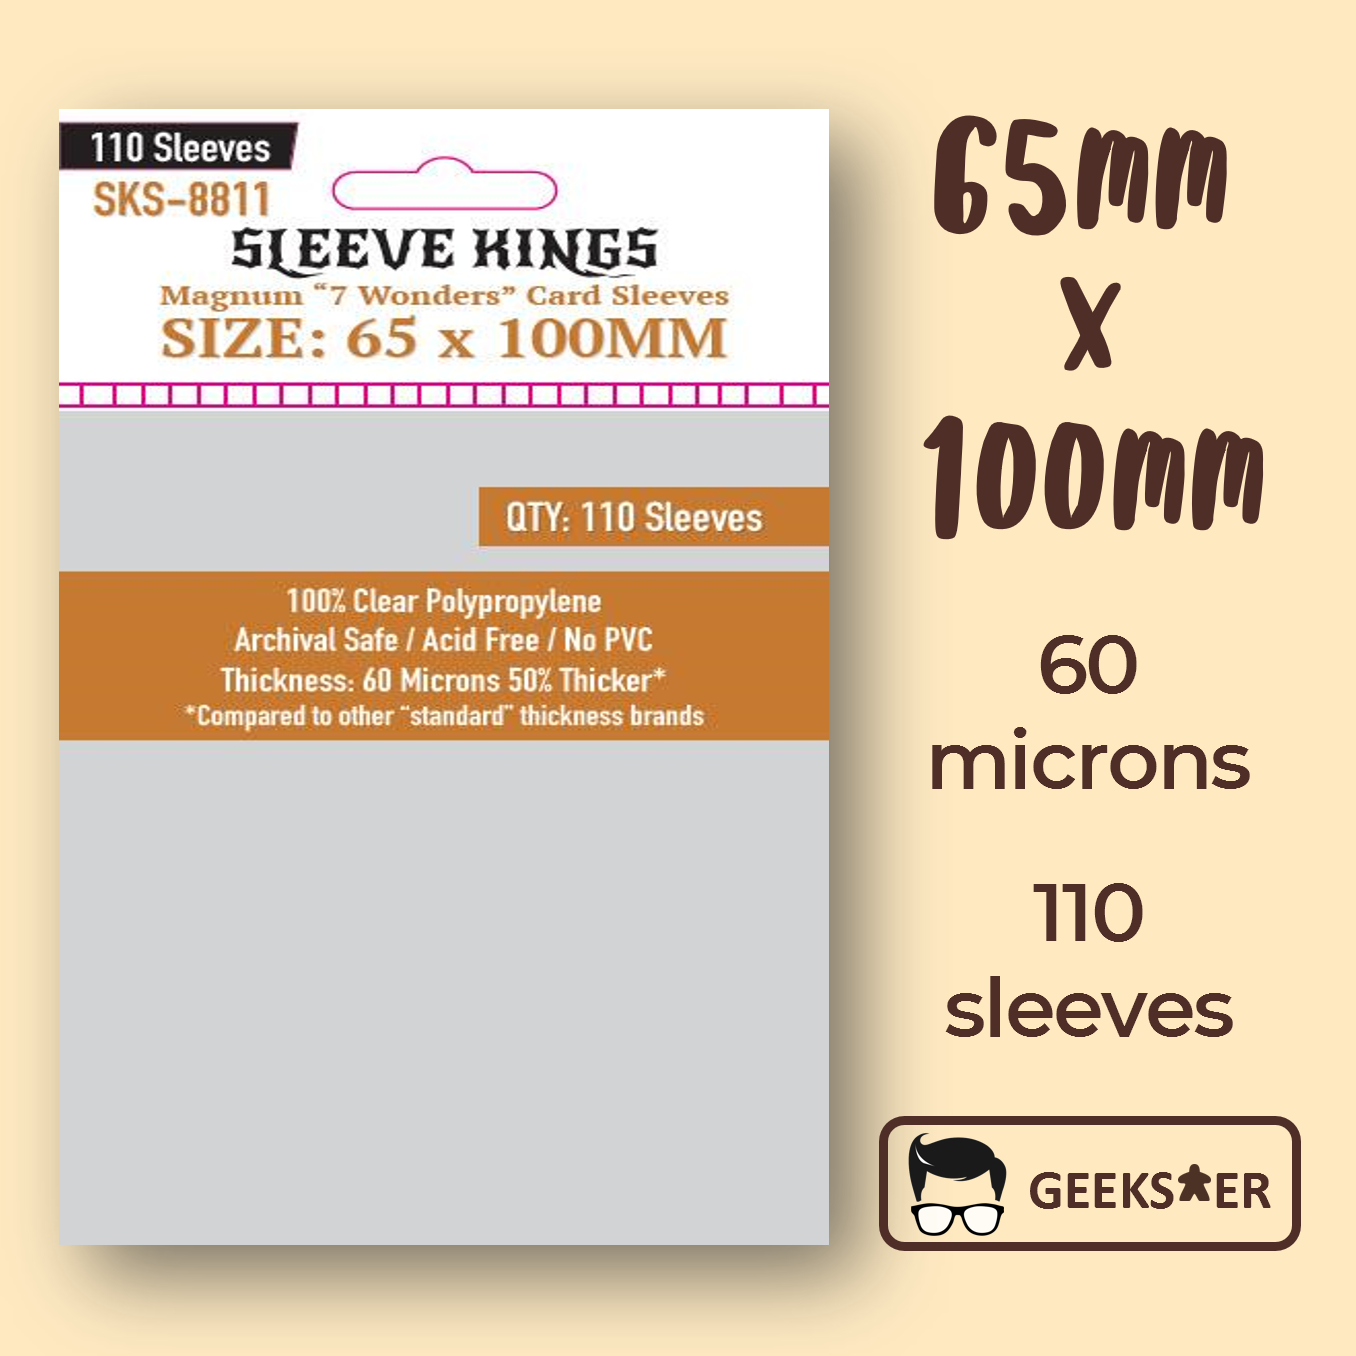 [65 X 100mm] 8811 Sleeve Kings Magnum "7 Wonders"